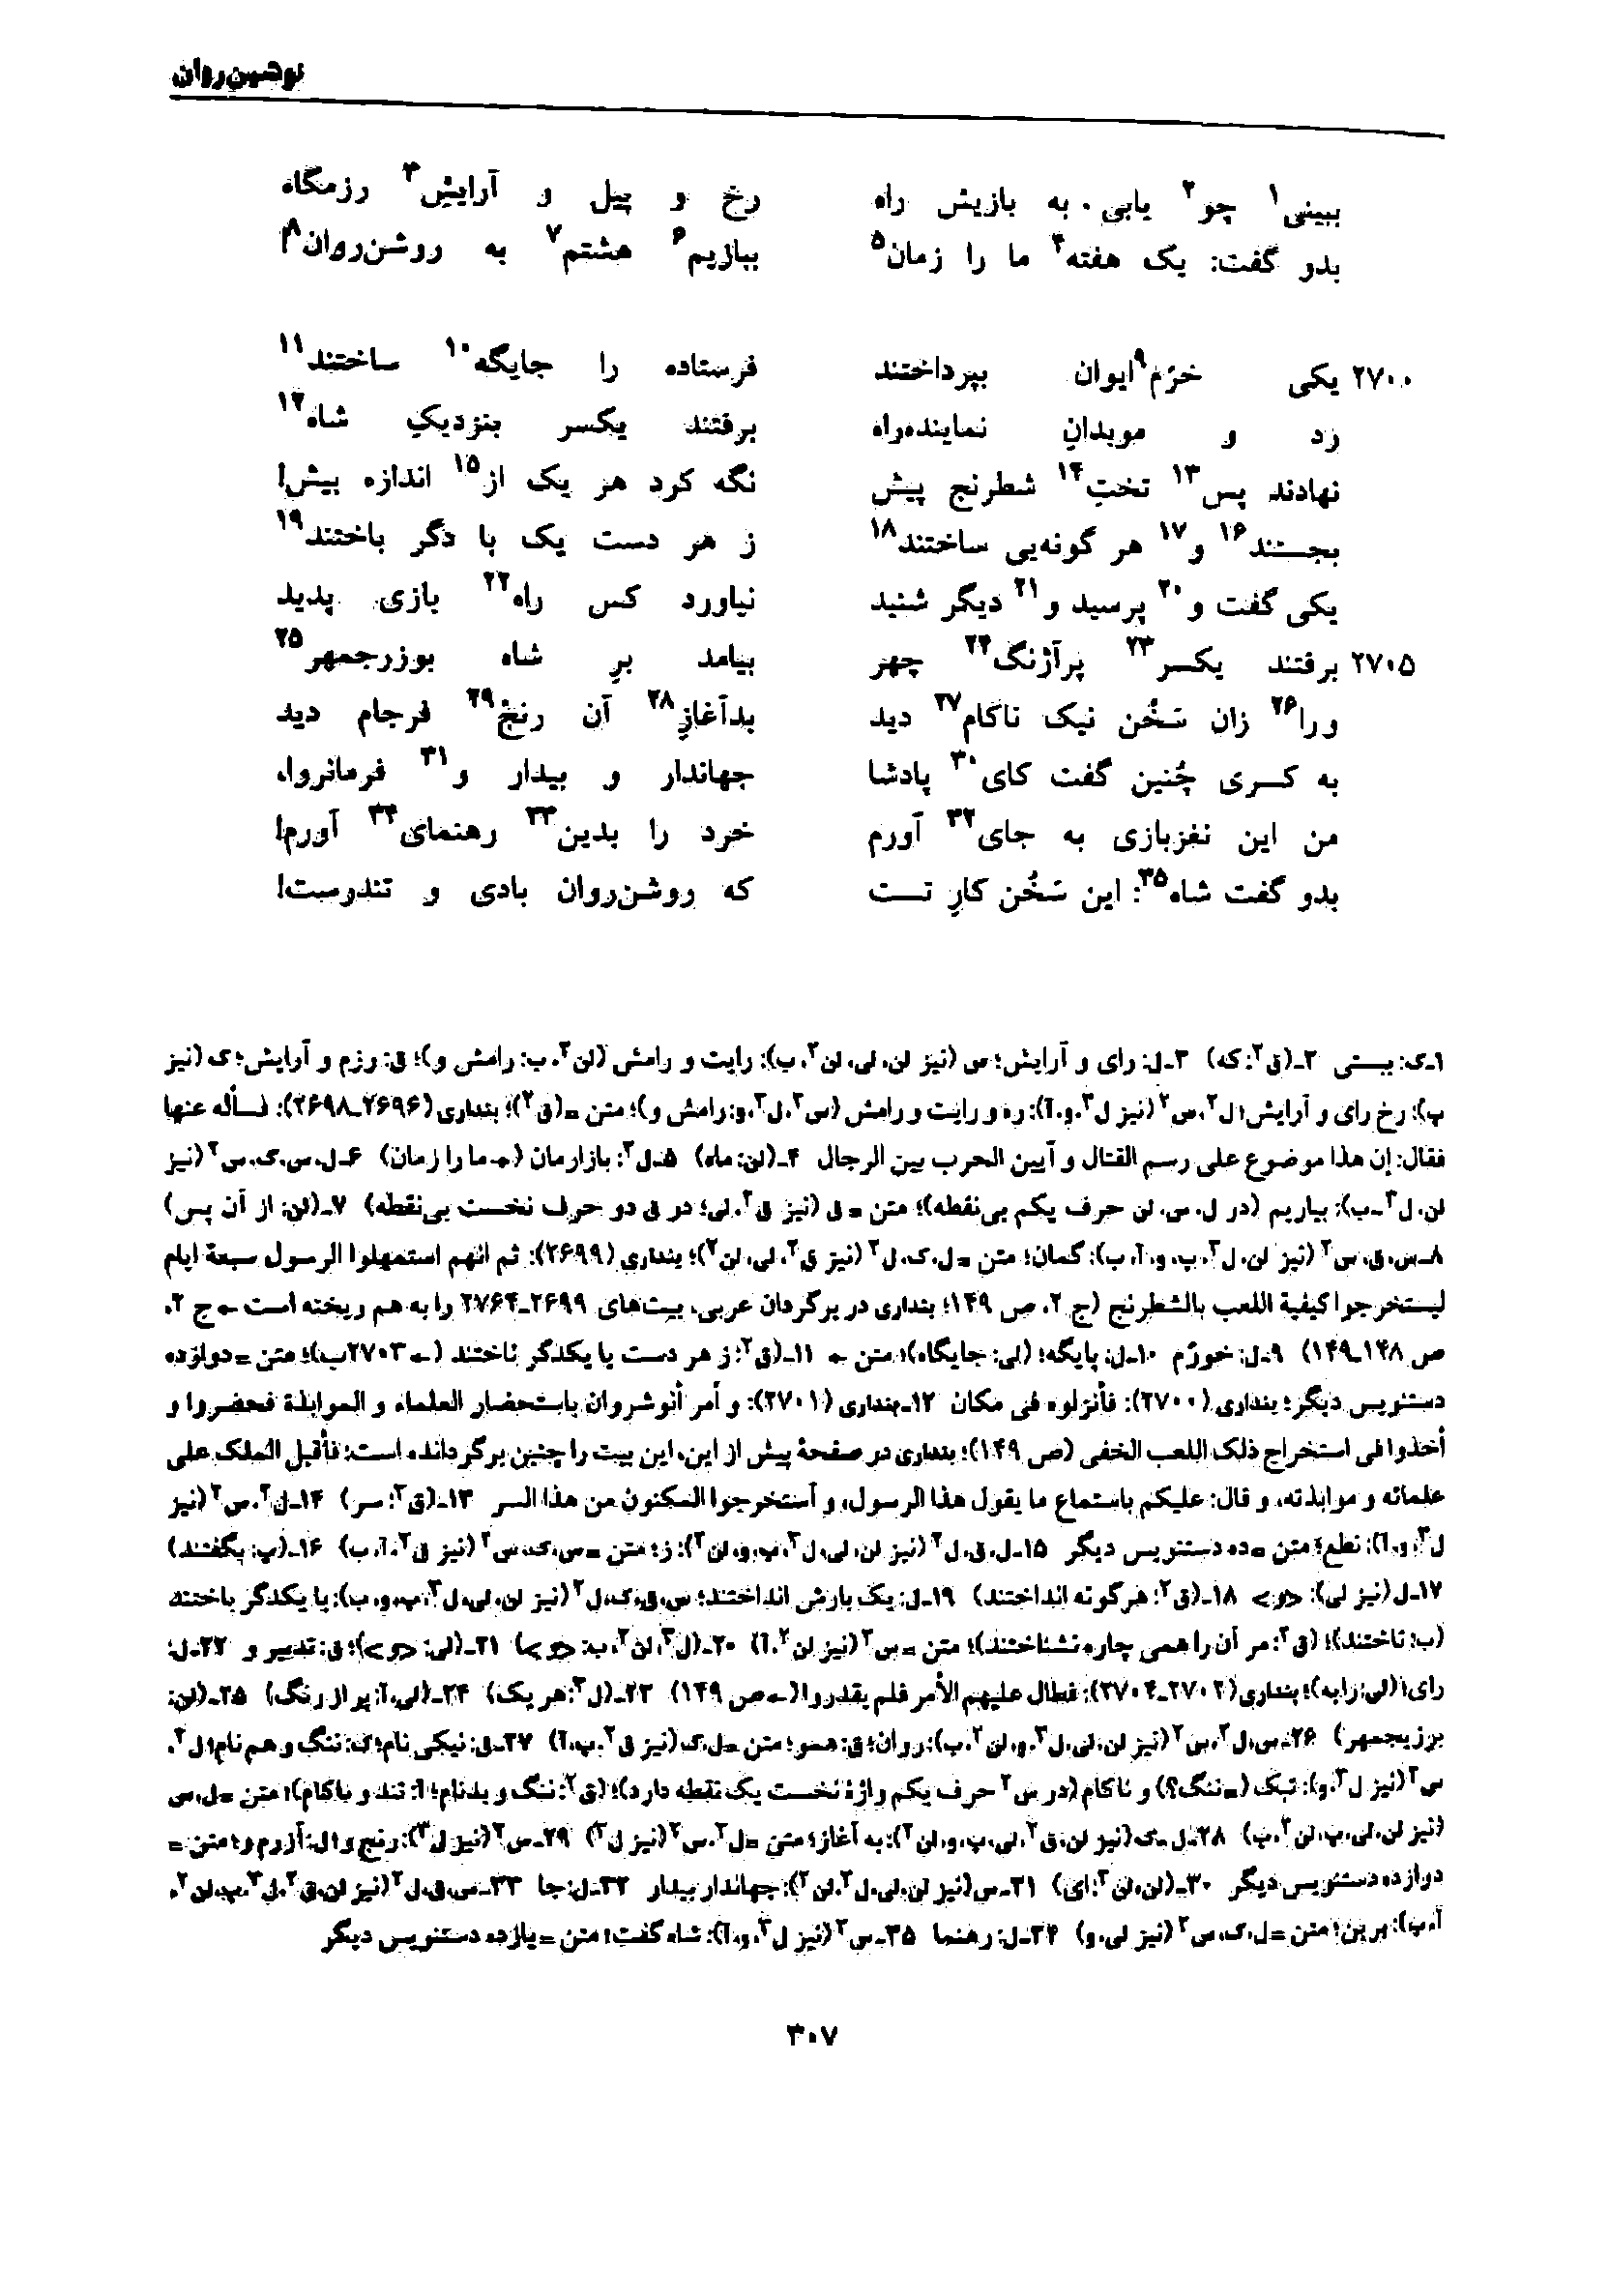 vol. 7, p. 307